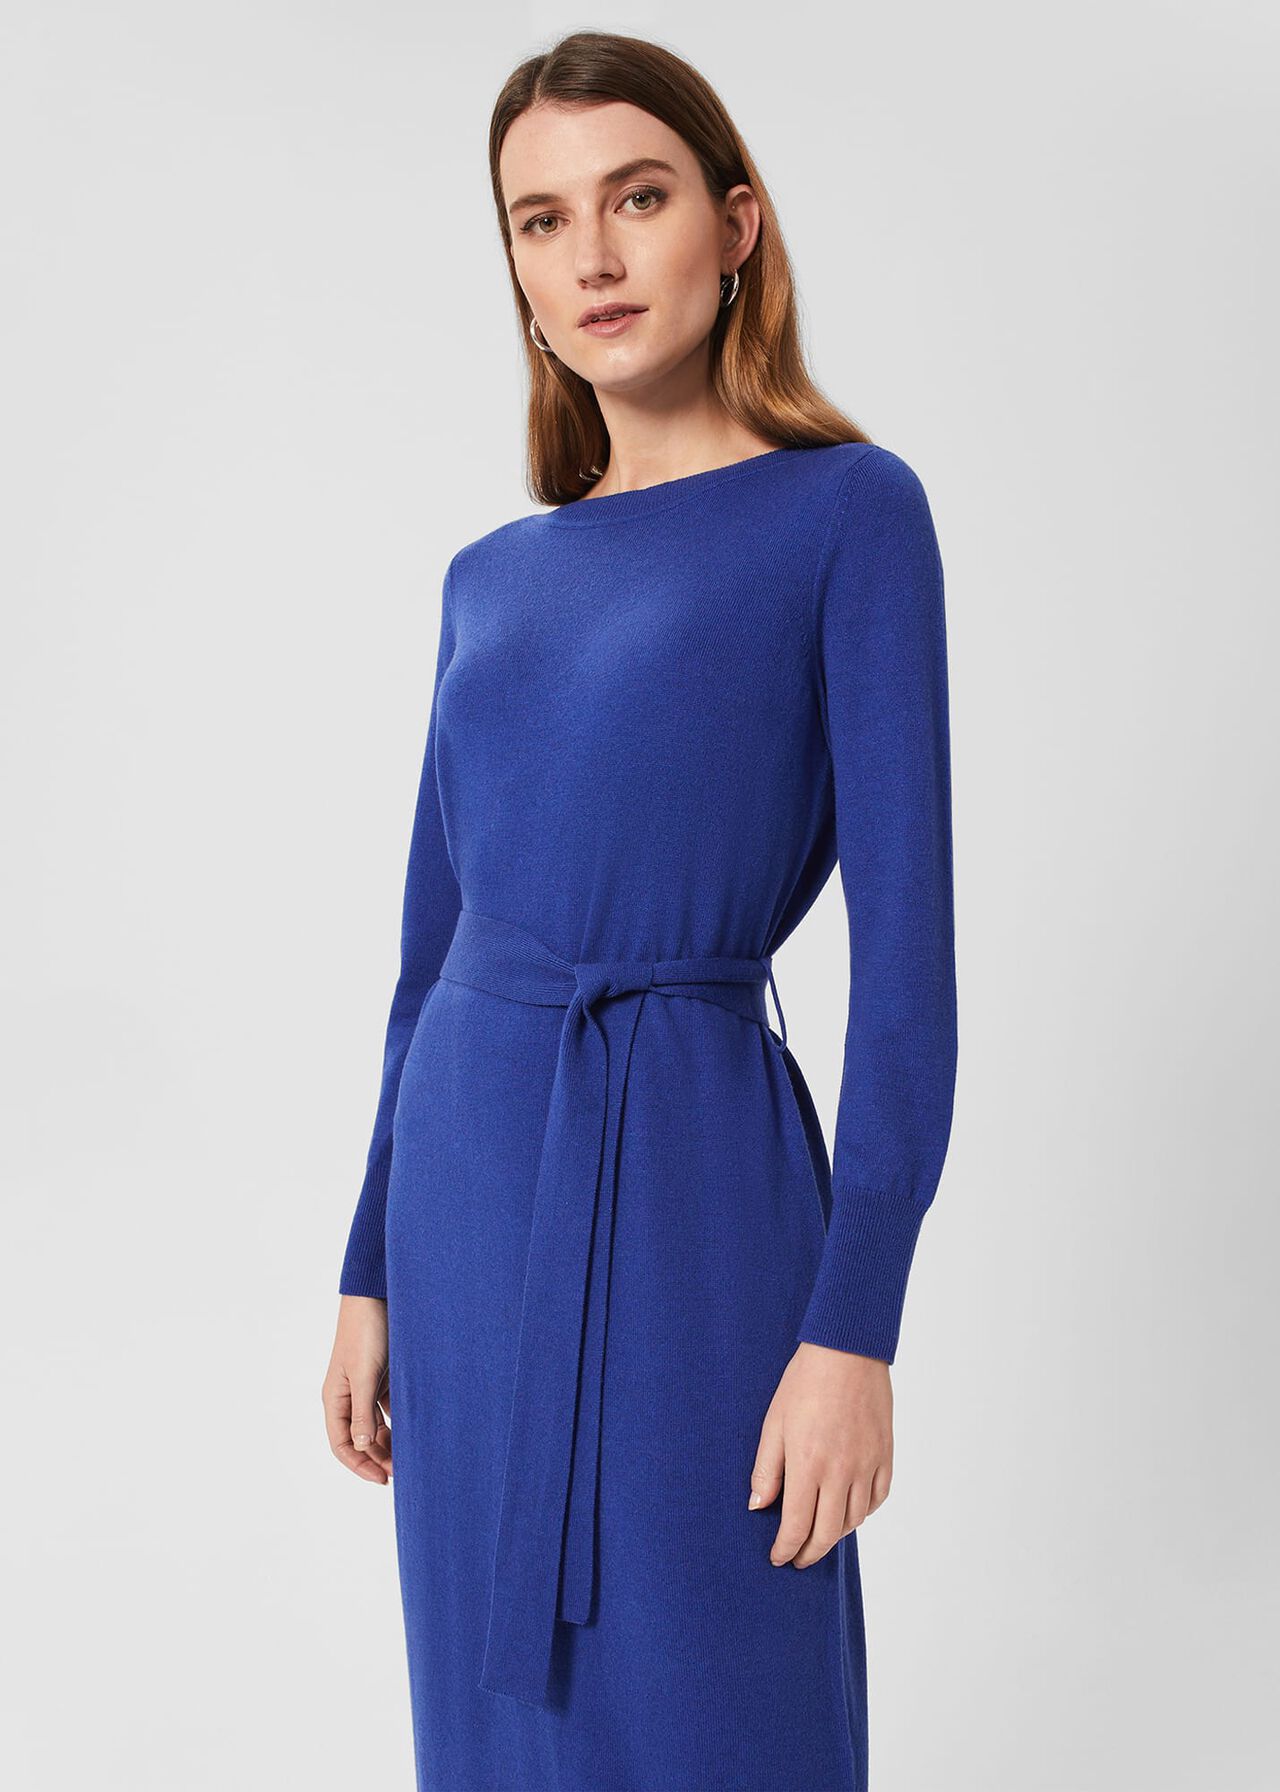 Eloise Knitted Dress, Cobalt Blue, hi-res